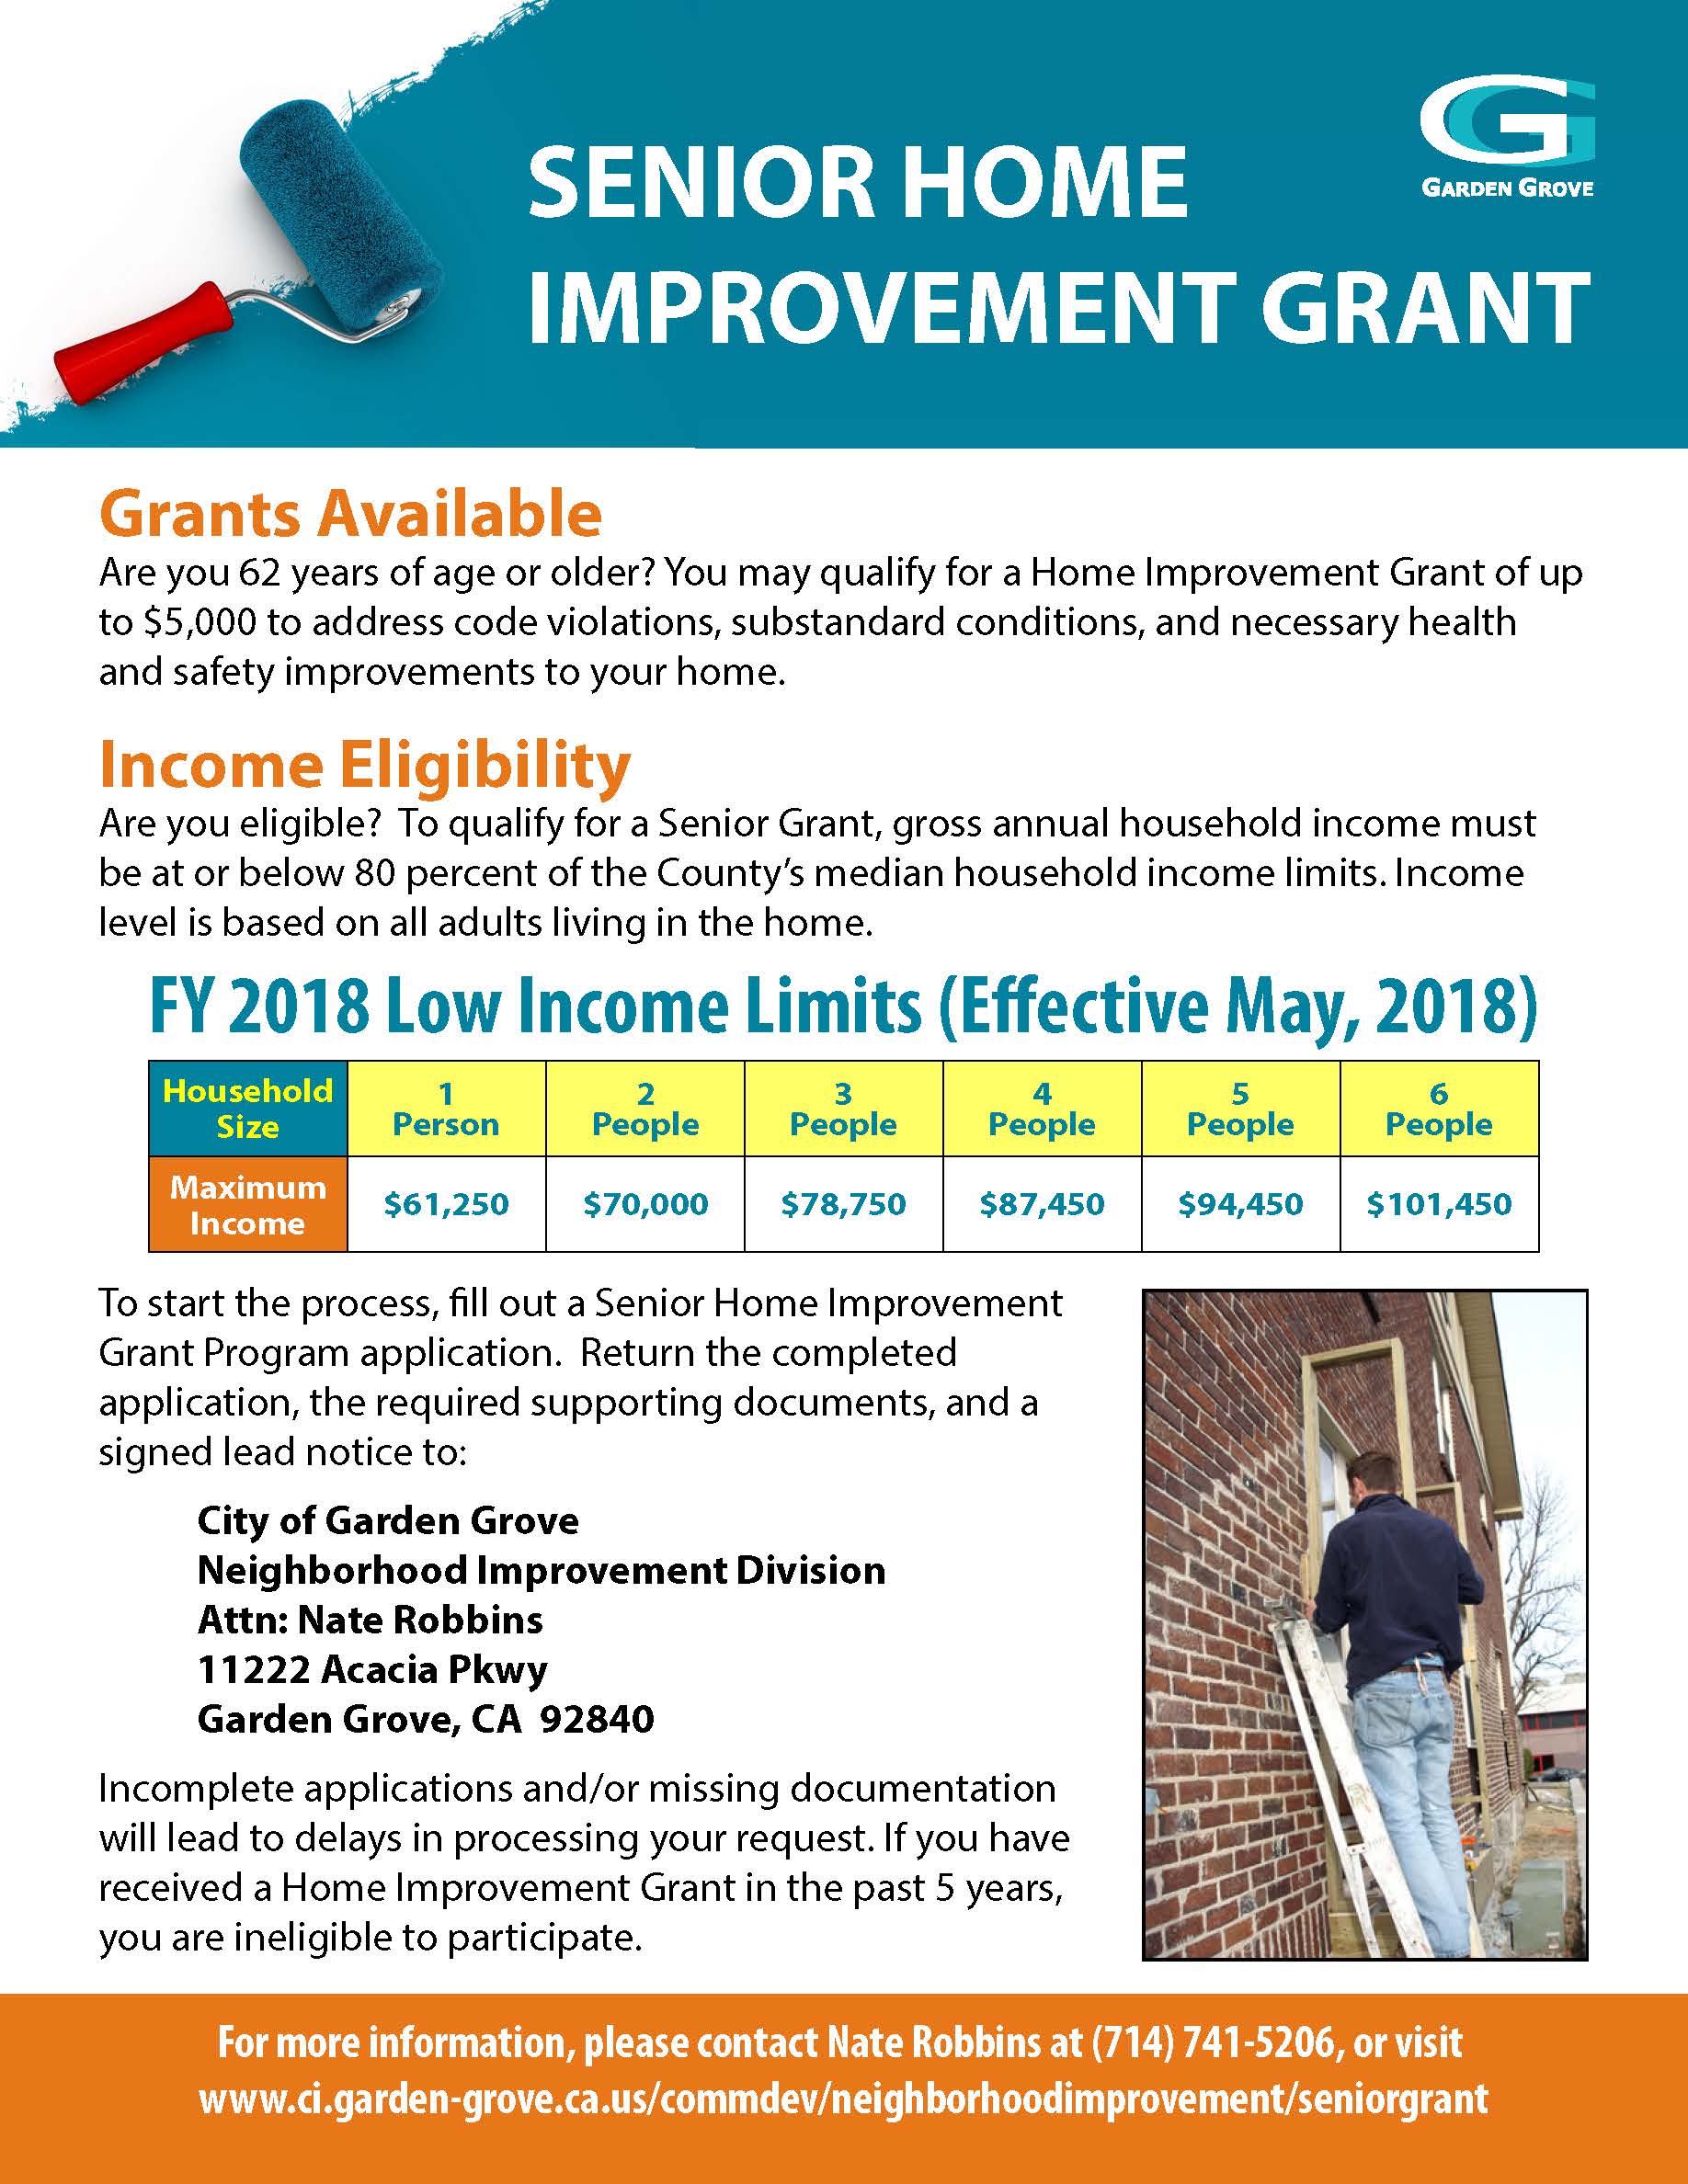 grants-available-for-senior-home-improvement-program-city-of-garden-grove